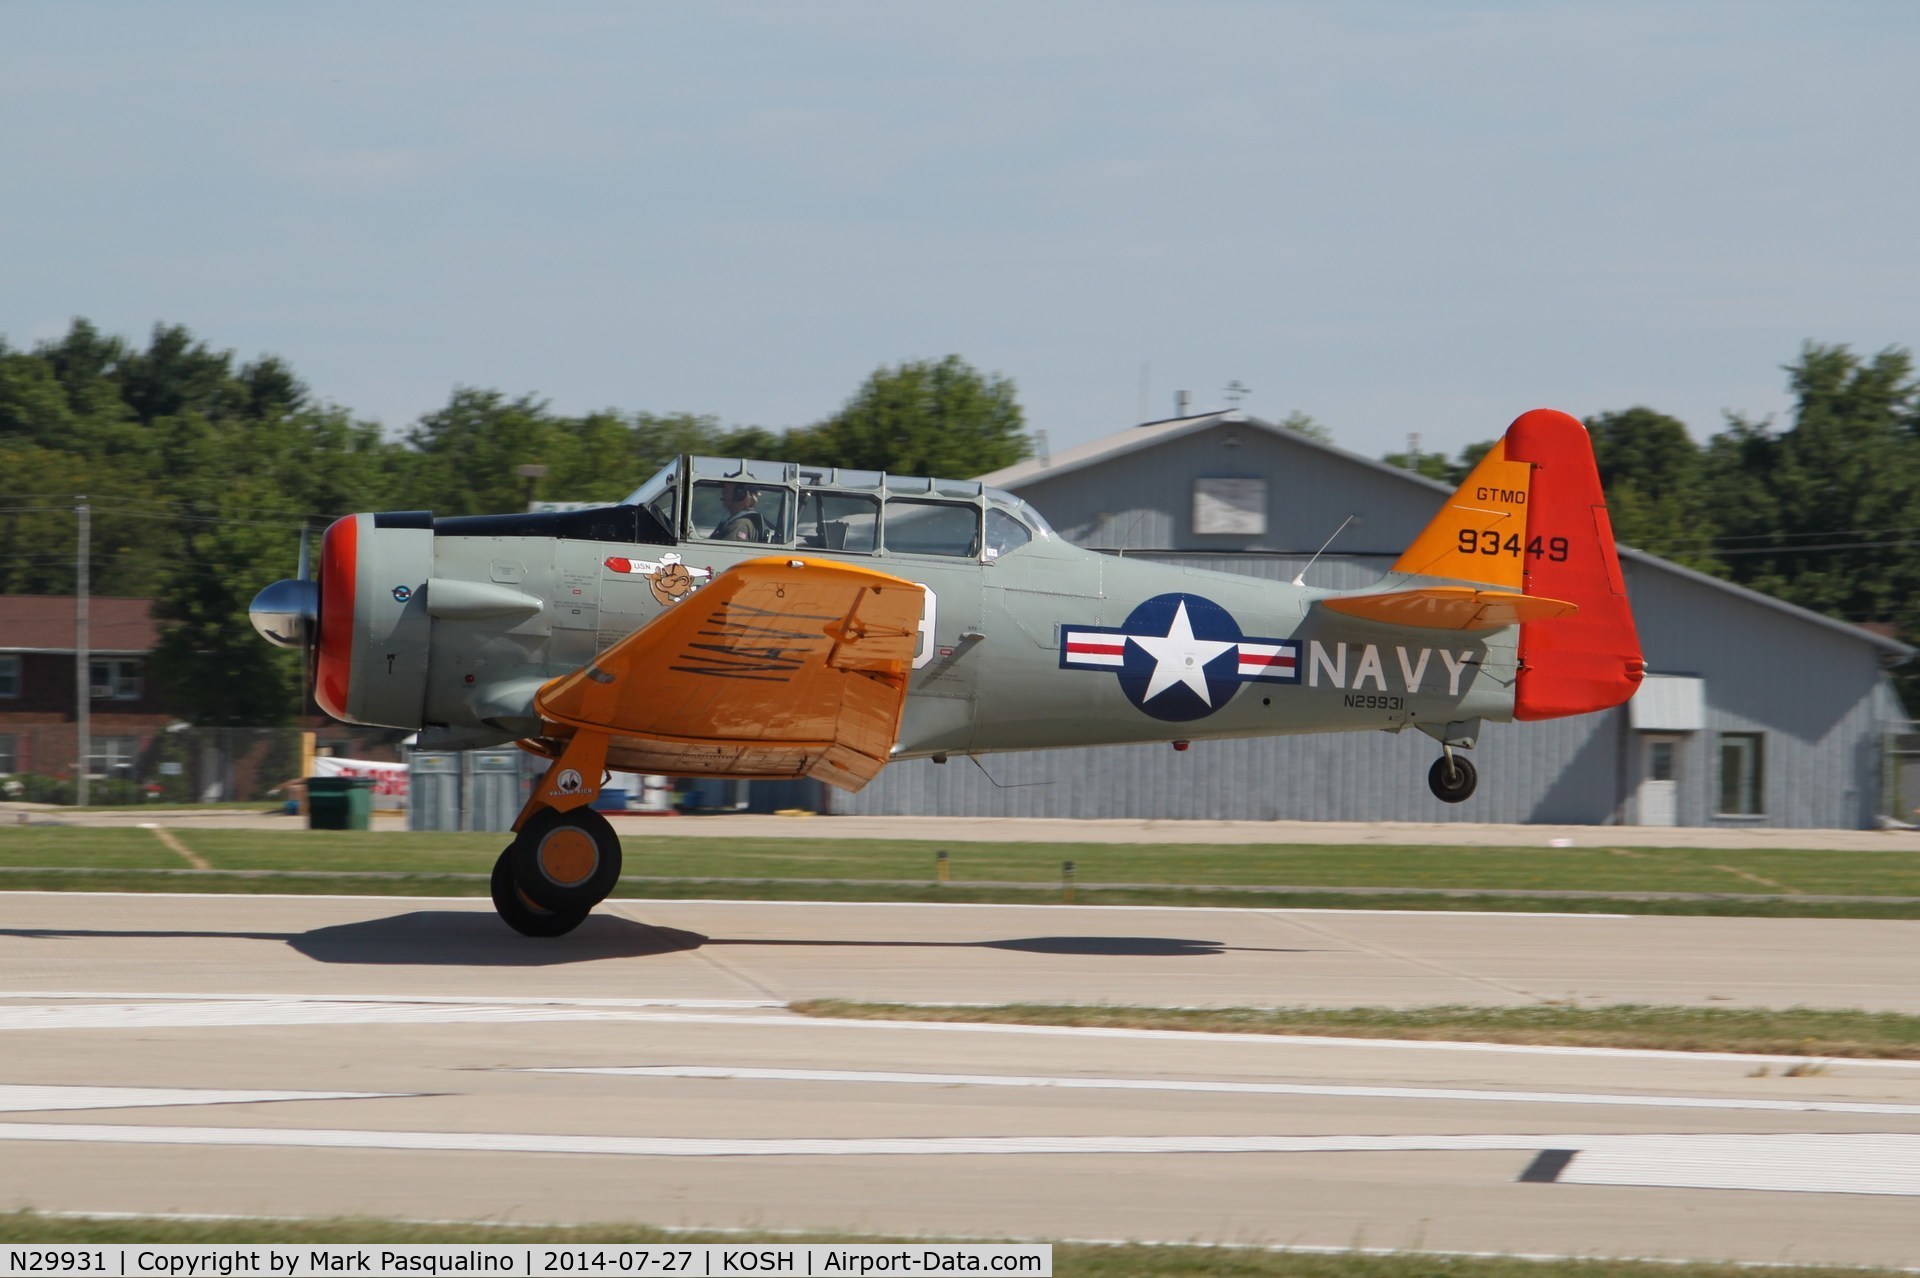 N29931, 1943 North American AT-6G Texan C/N 168-583 (49-3449), North American AT-6G